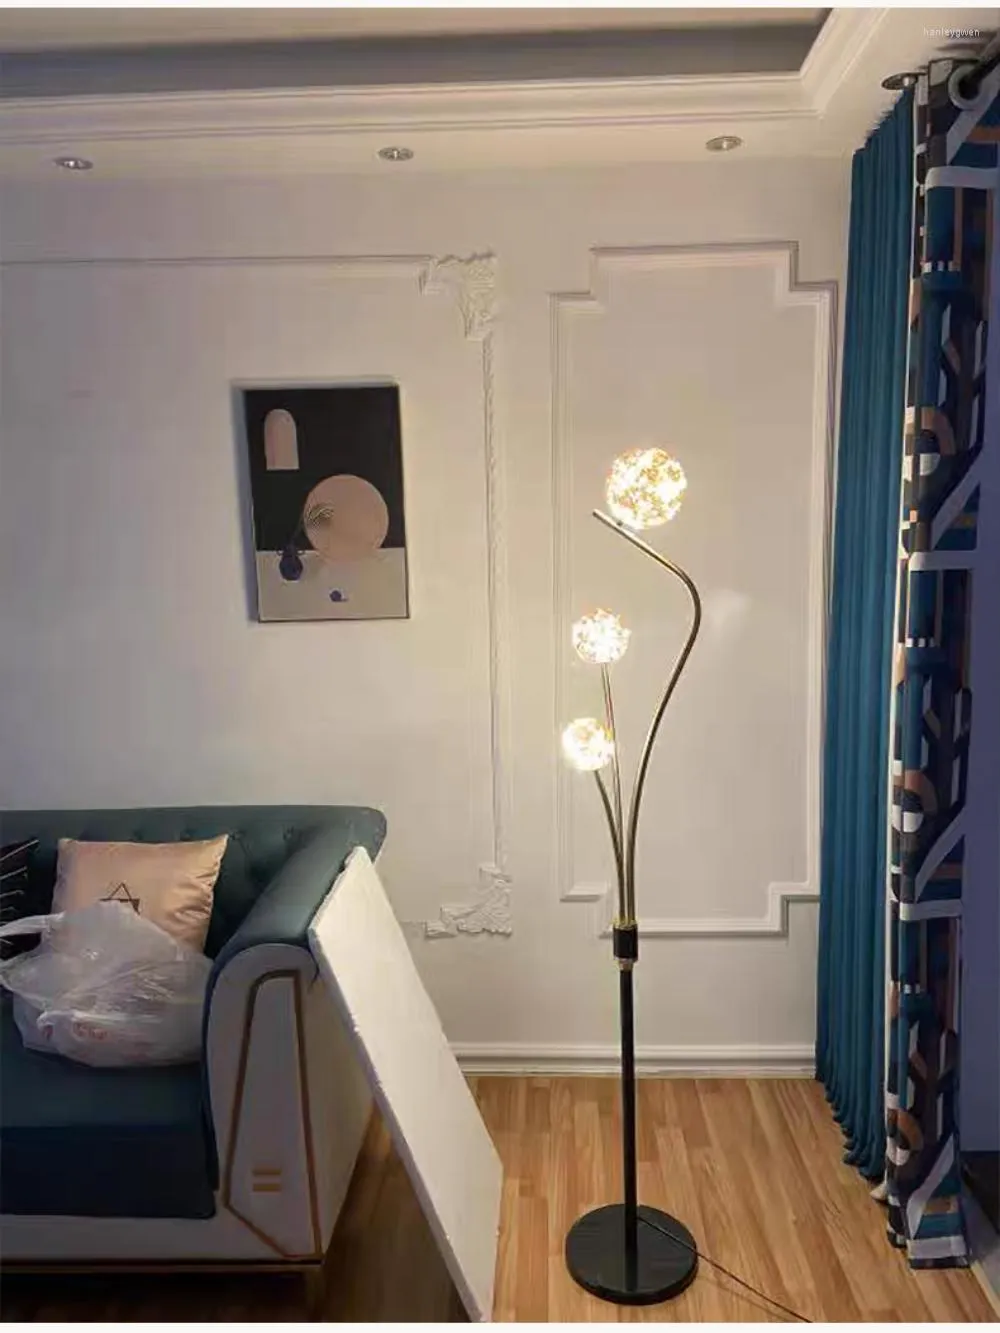 Lampy podłogowe szklane lampa LED Nowoczesna cygańska salon dom do dekoracji sofa sypialnia sypialnia nocna oświetlenie wewnętrzne